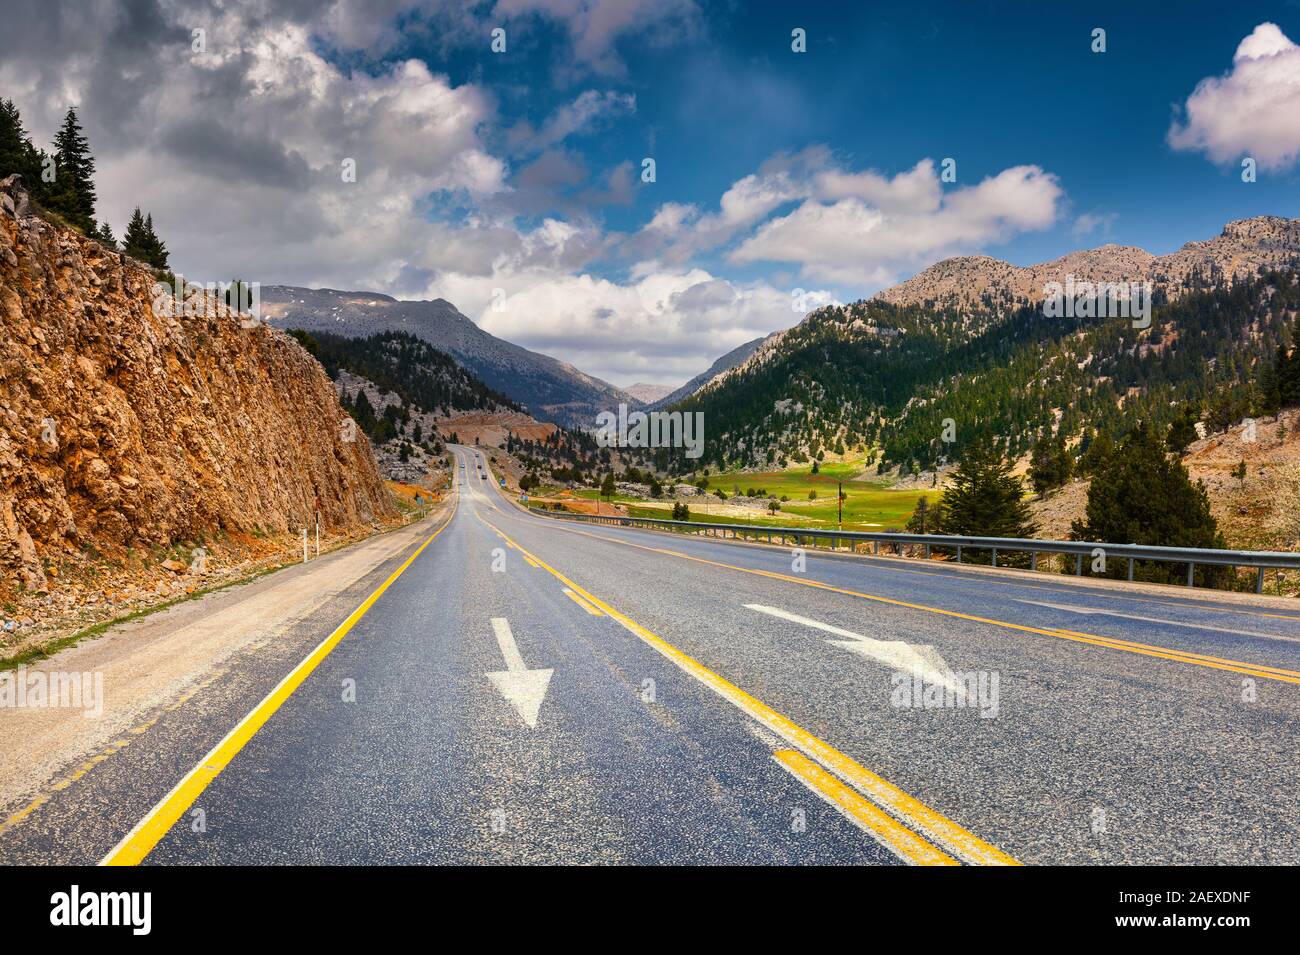 Vacíe el asfalto con el espectacular cielo nublado. Hermosos paisajes al aire libre en Turquía, Asia. Imagen de fondo el concepto de viaje. Foto de stock